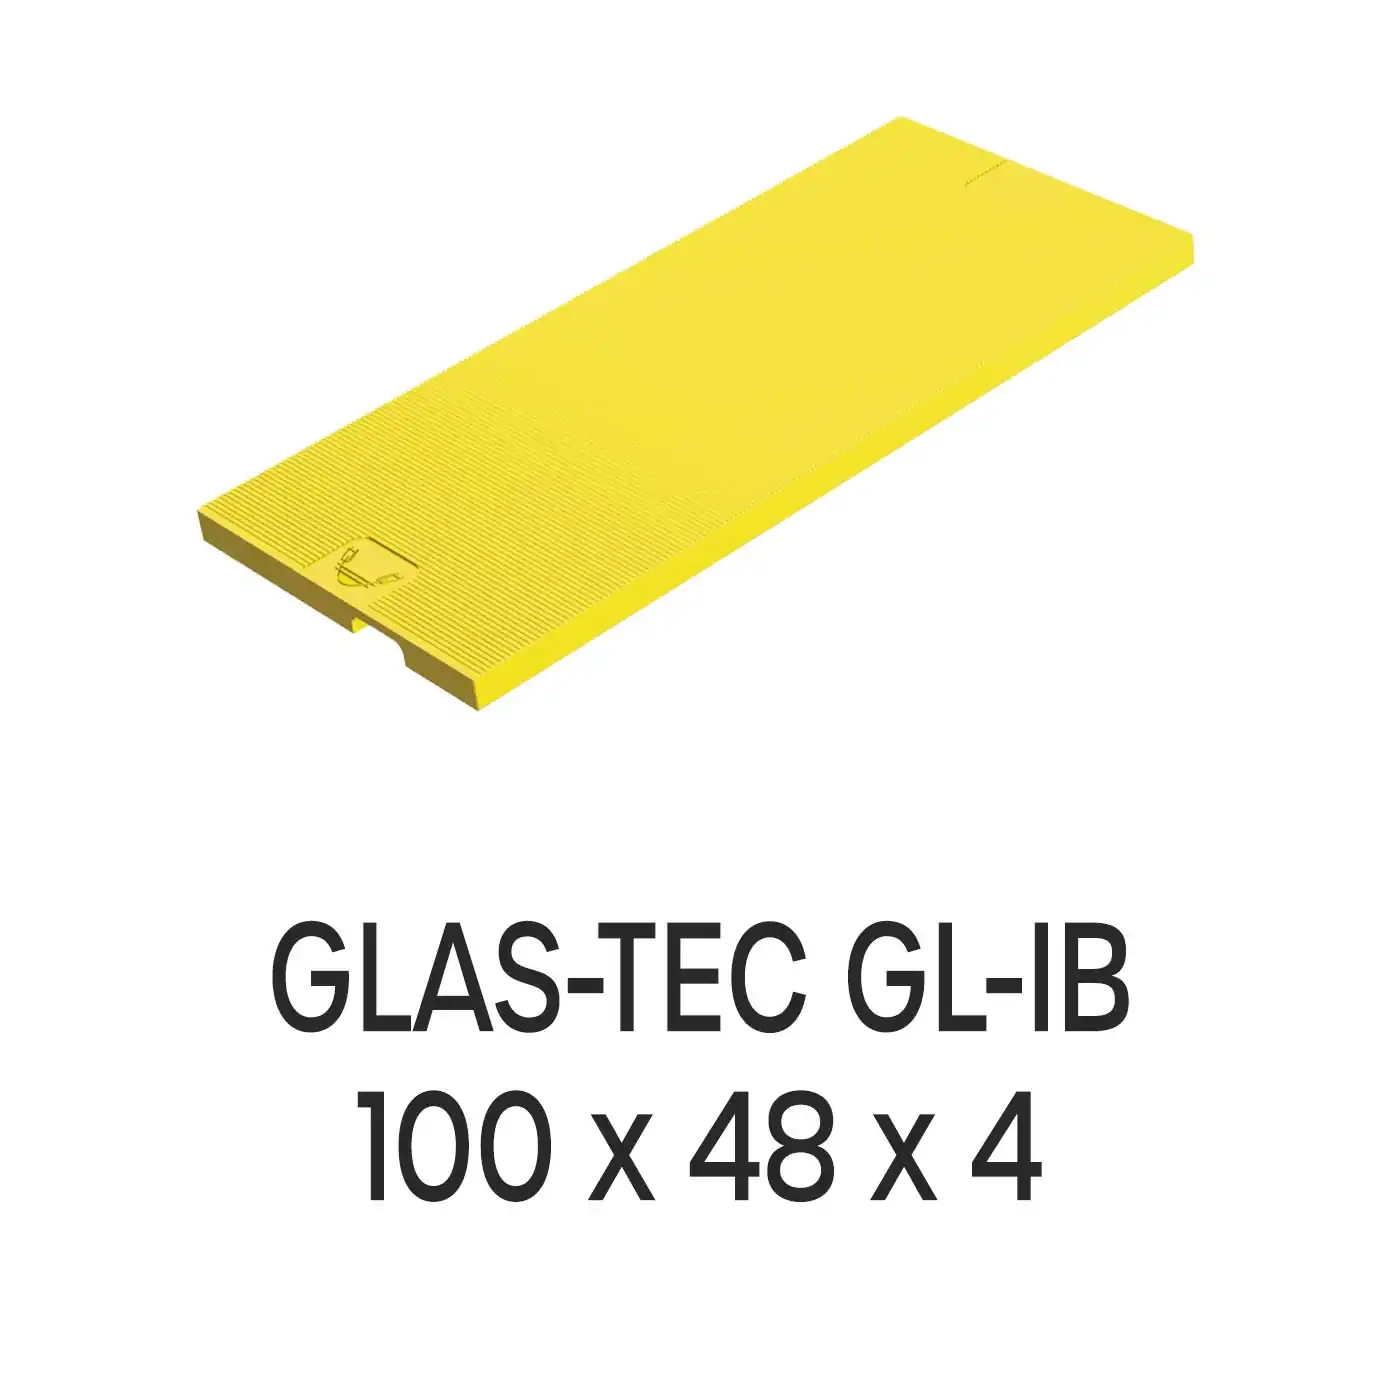 Roto Verglasungsklotz GLAS-TEC GL-IB, 100 x 48 x 4 mm, schwarz, 500 Stück